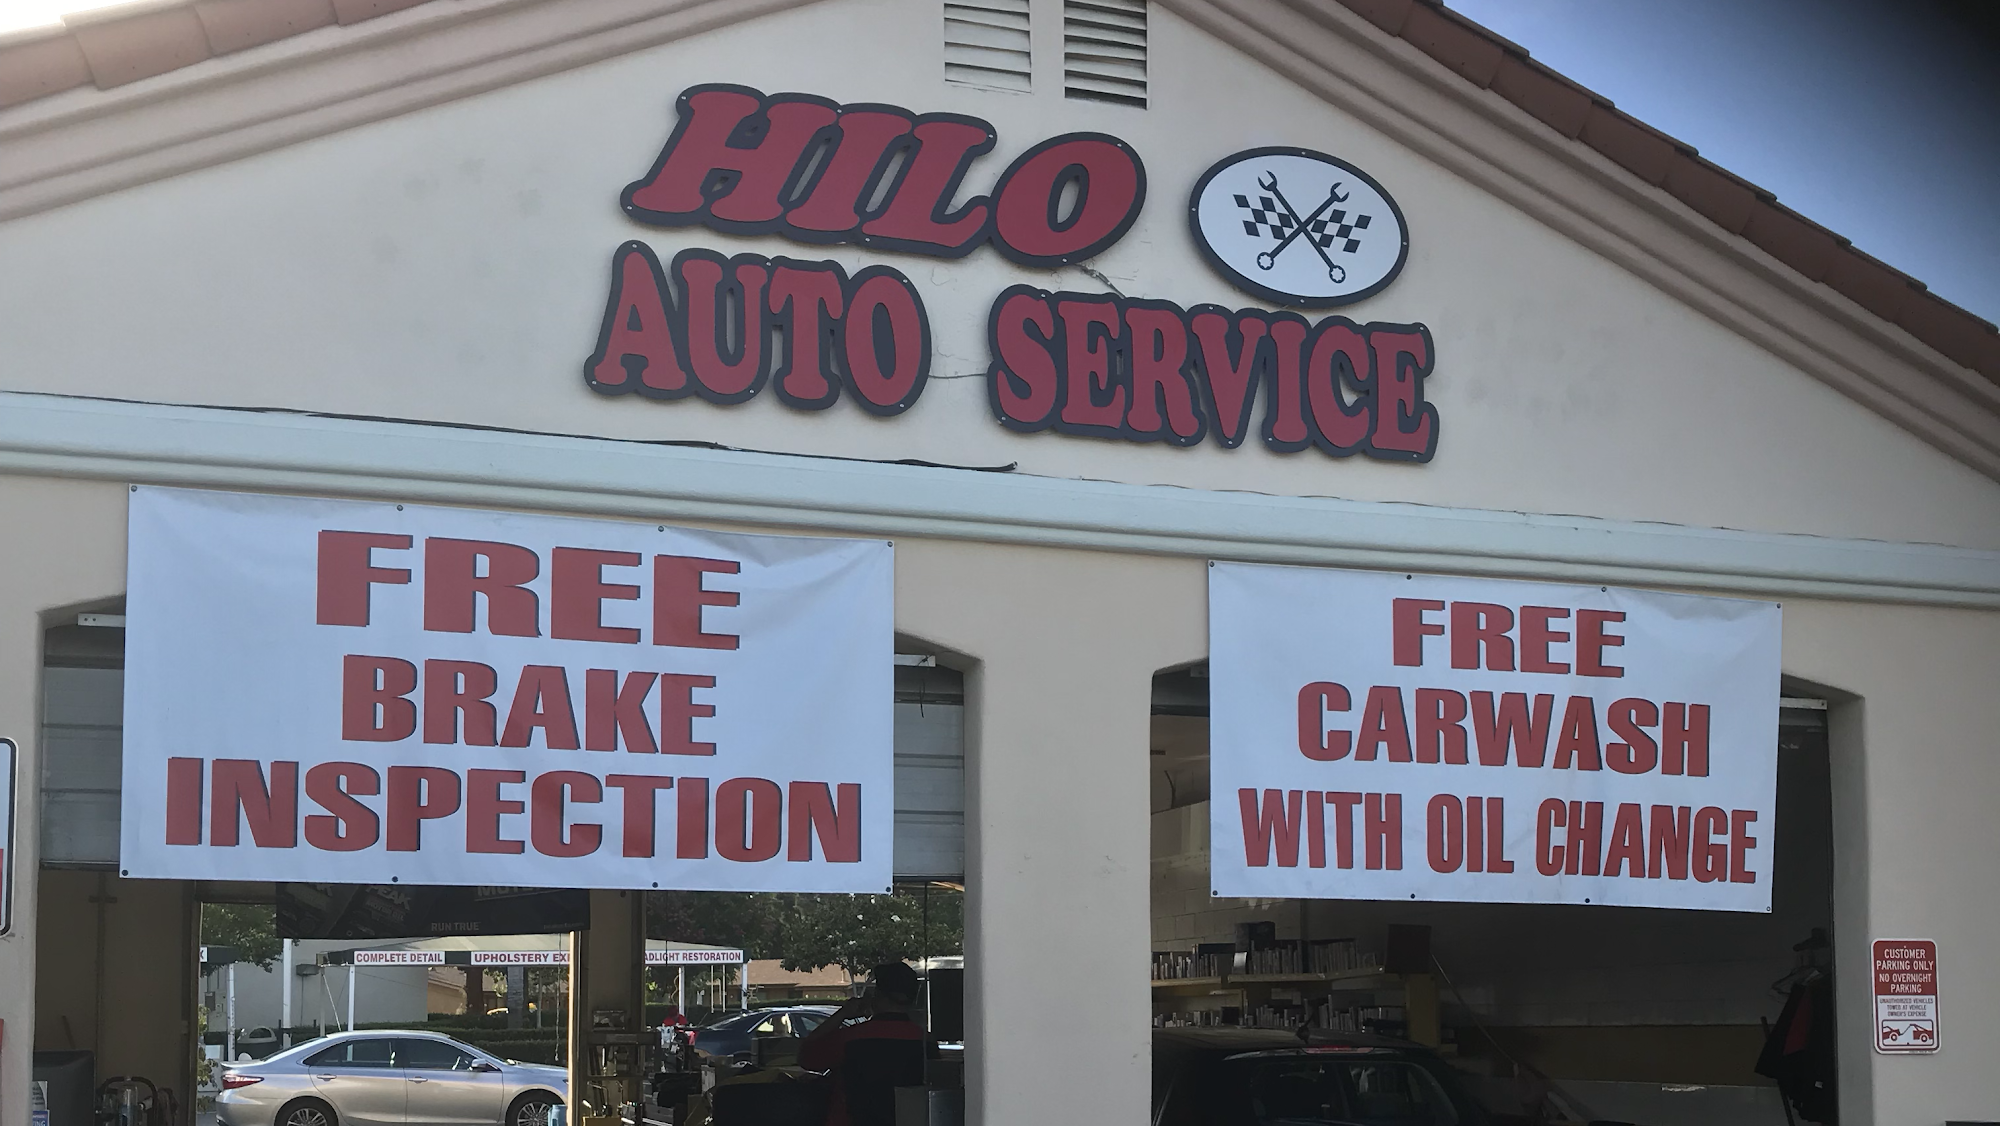 Hilo Auto Service